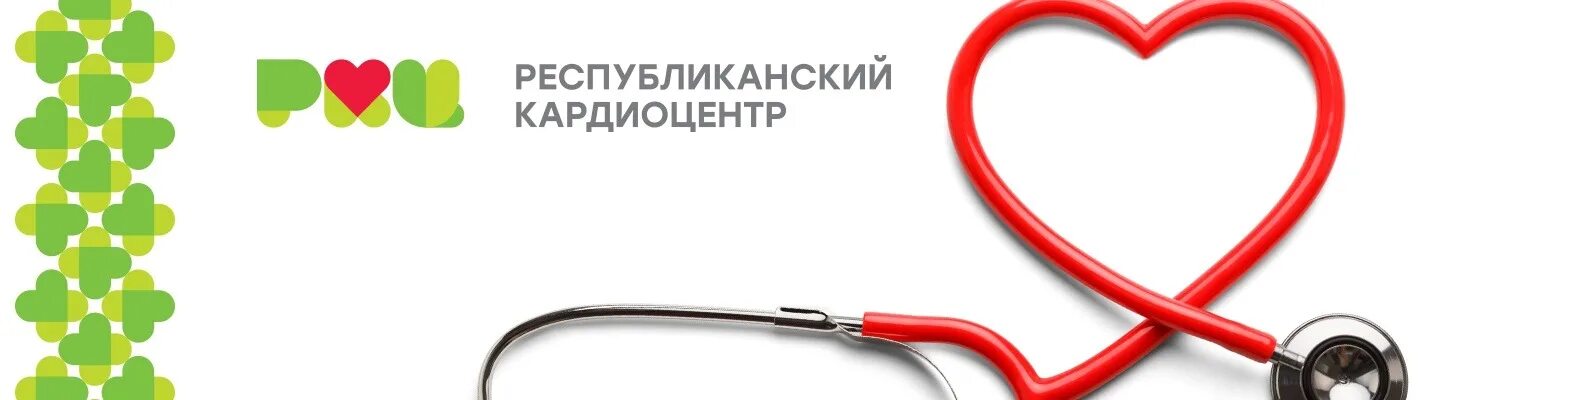 Кардиологическая больница Уфа. Логотип кардиологической клиники. Логотип Республиканский кардиологический центр.